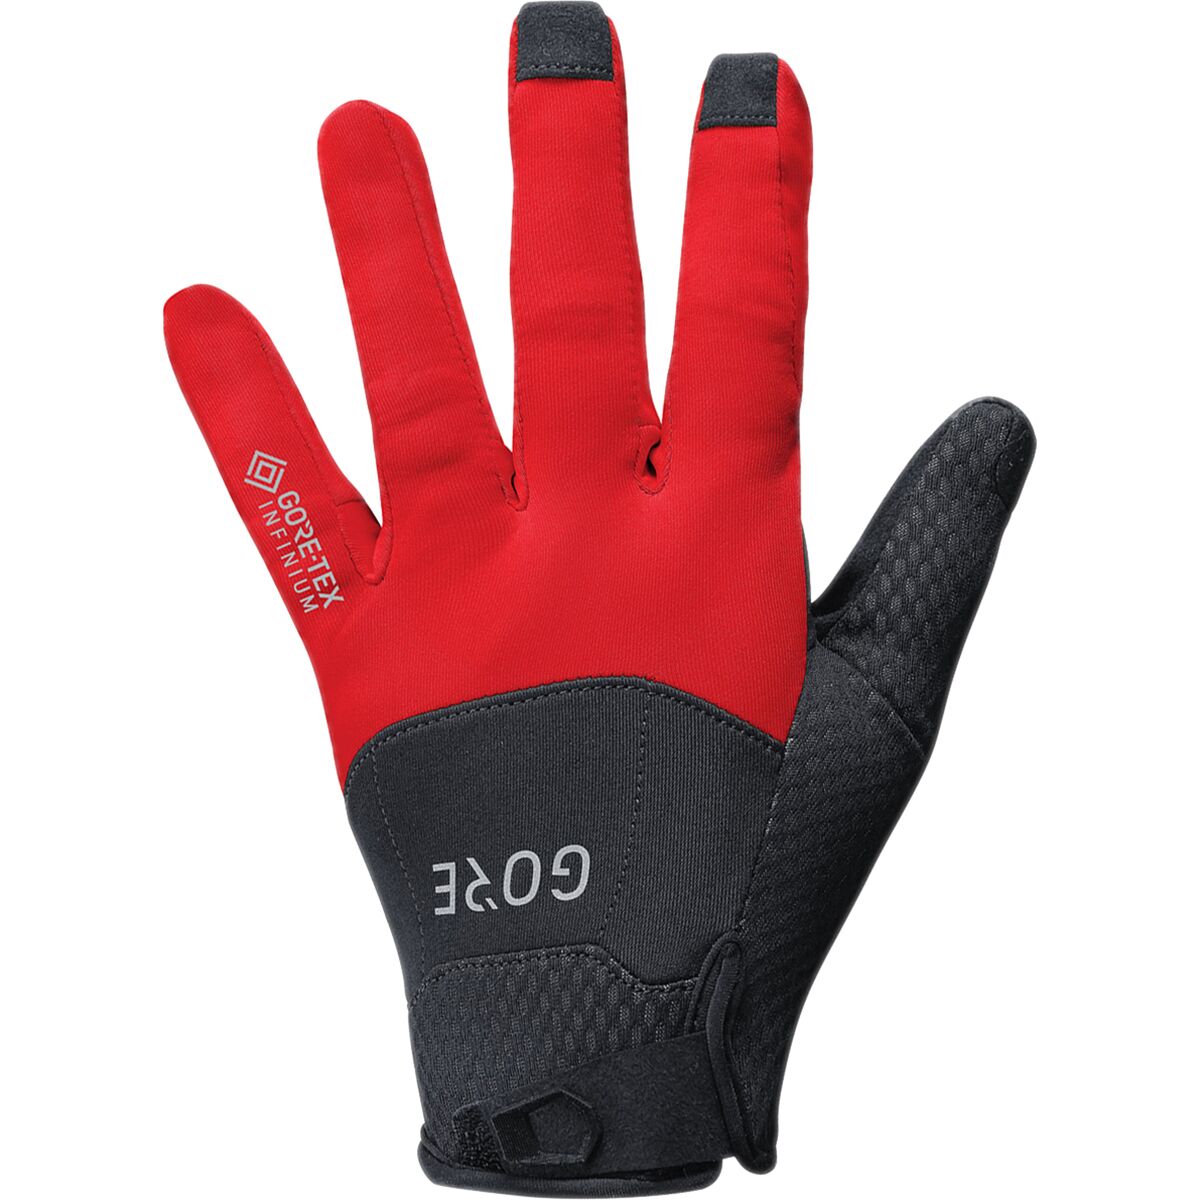 C5 GORE-TEX Infinium Glove - Men